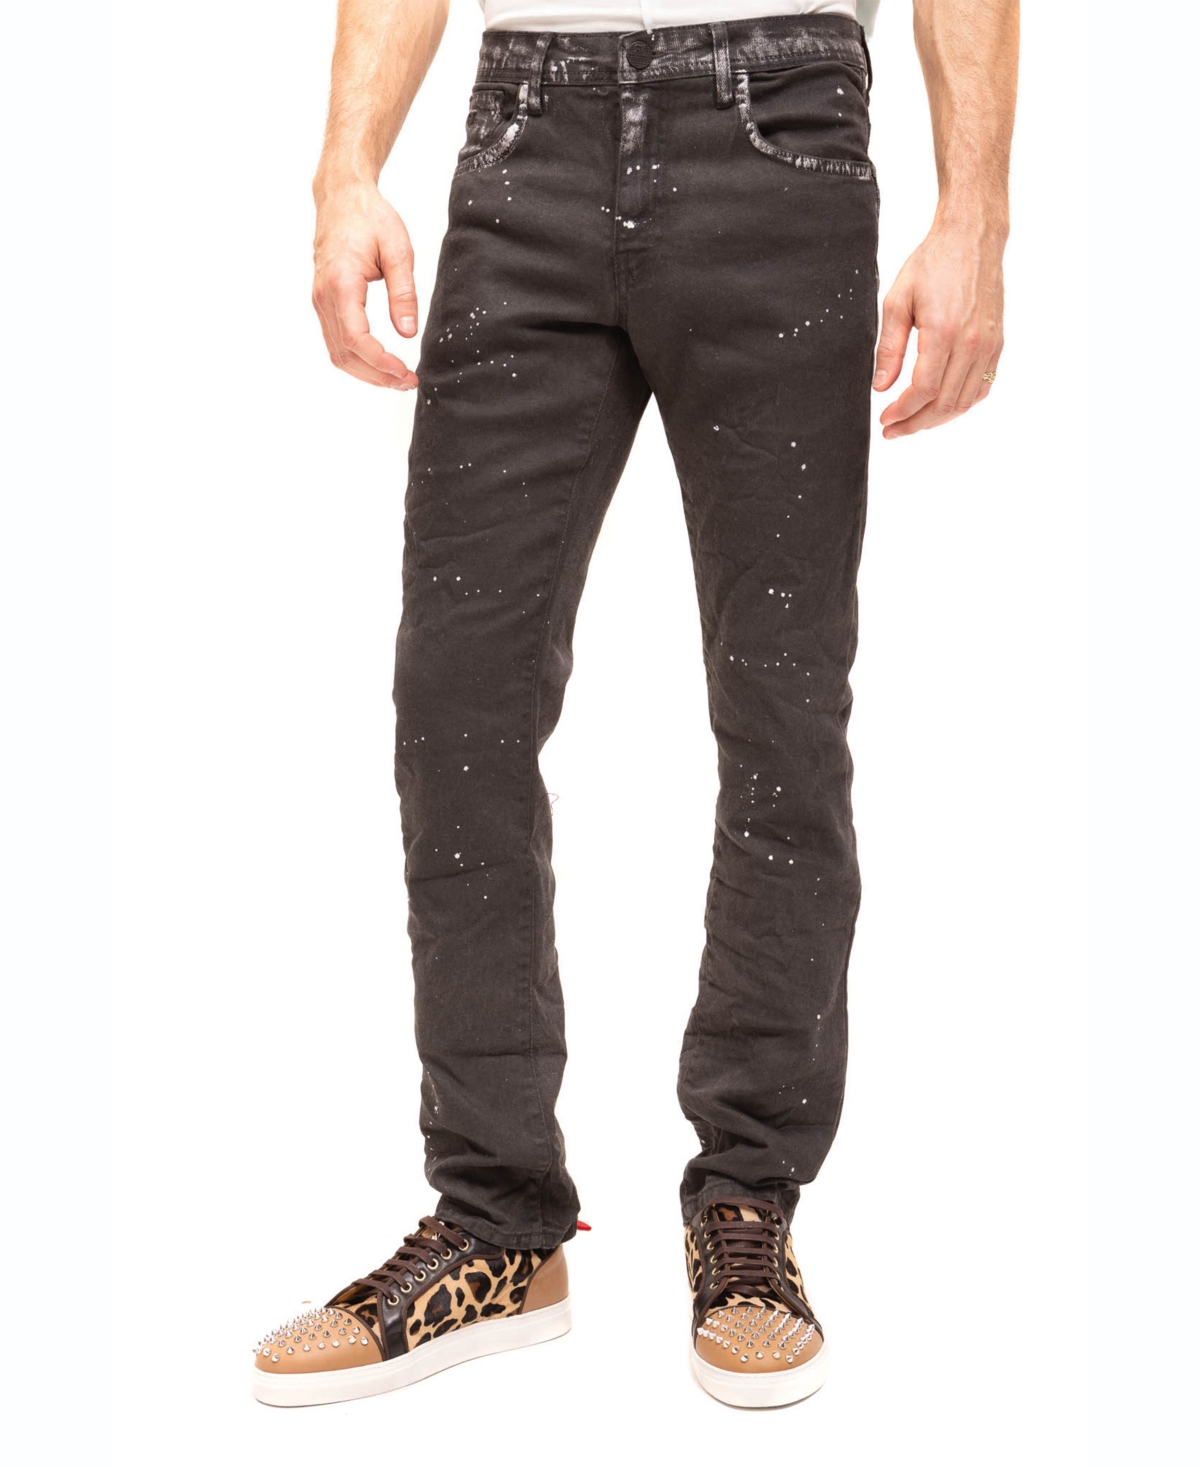 Men's Modern Splatter Denim Jeans - Black